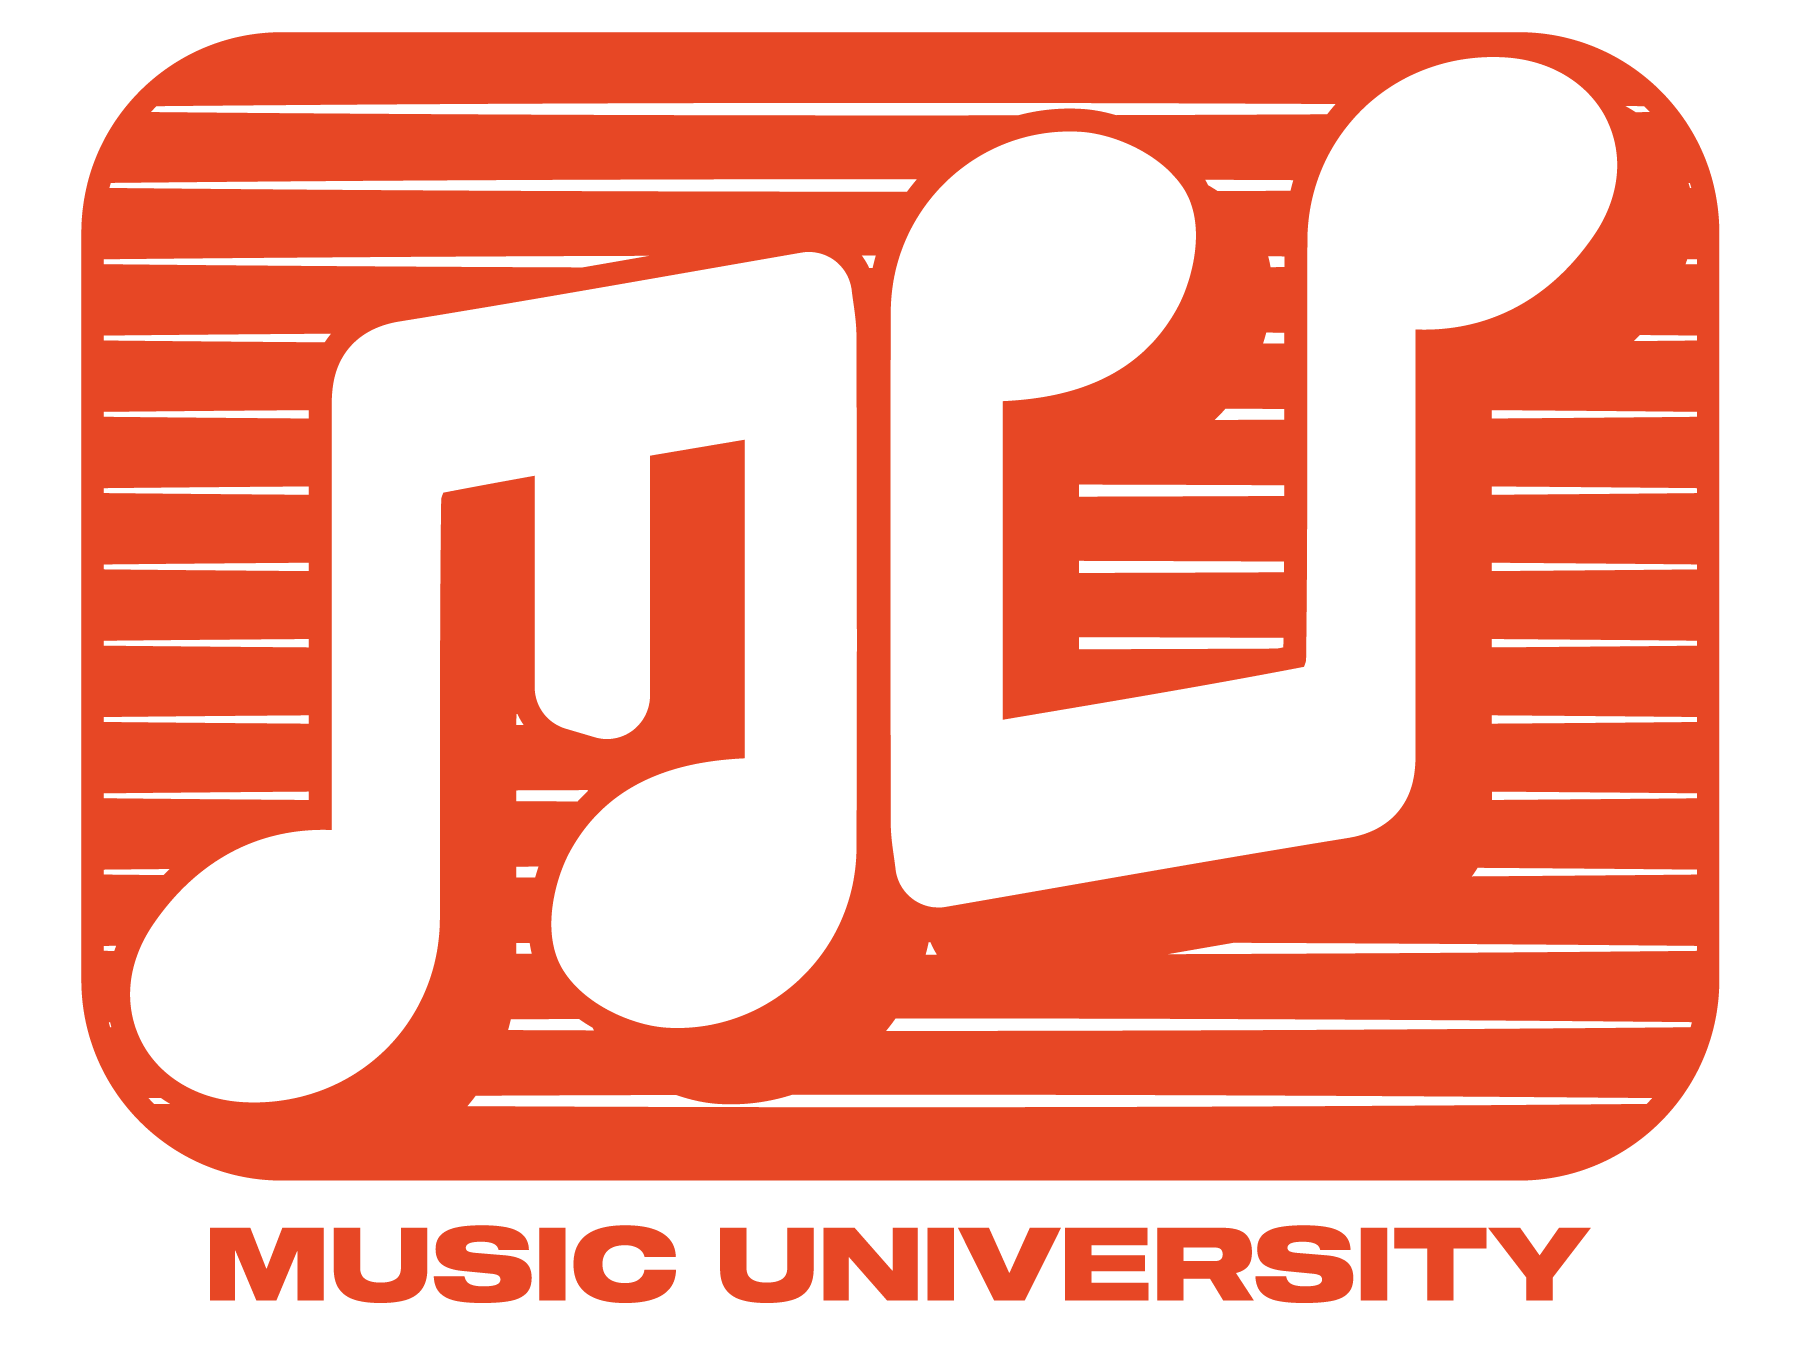 Music-University_Final_PANTONE-white-behind-logo-1